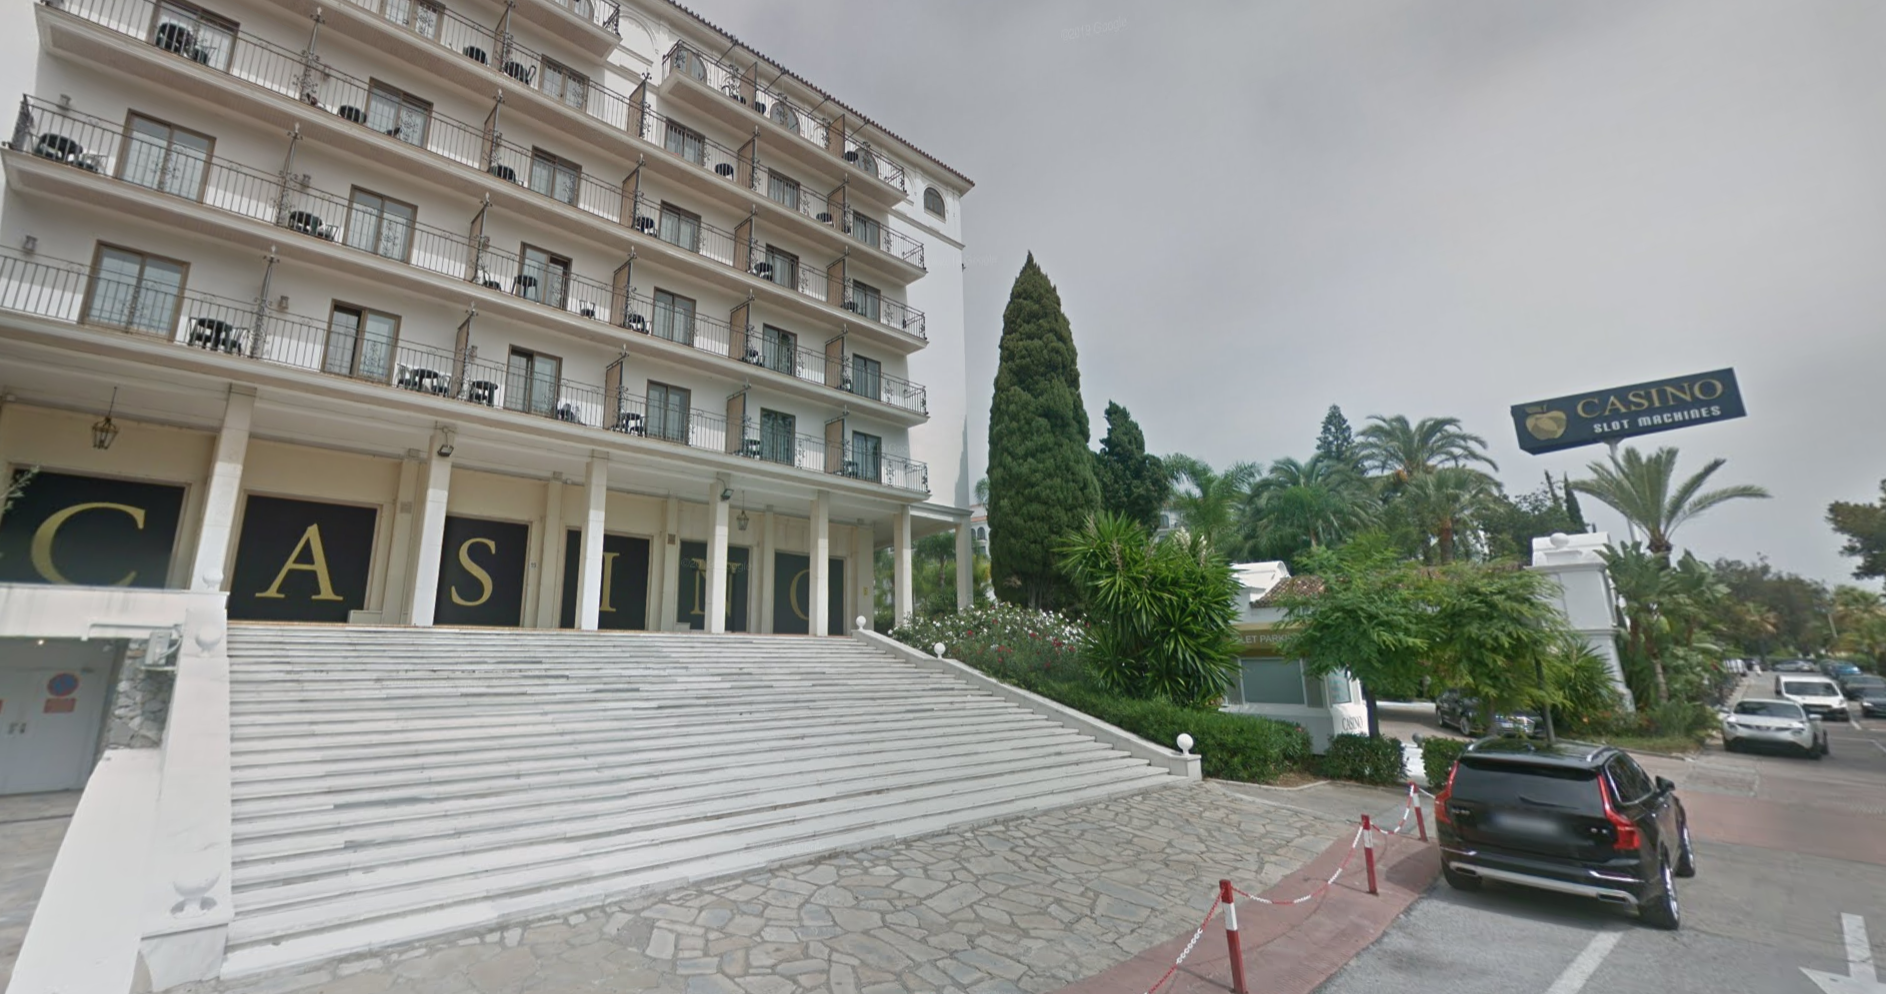 El casino de Marbella, en una imagen de Google Maps.